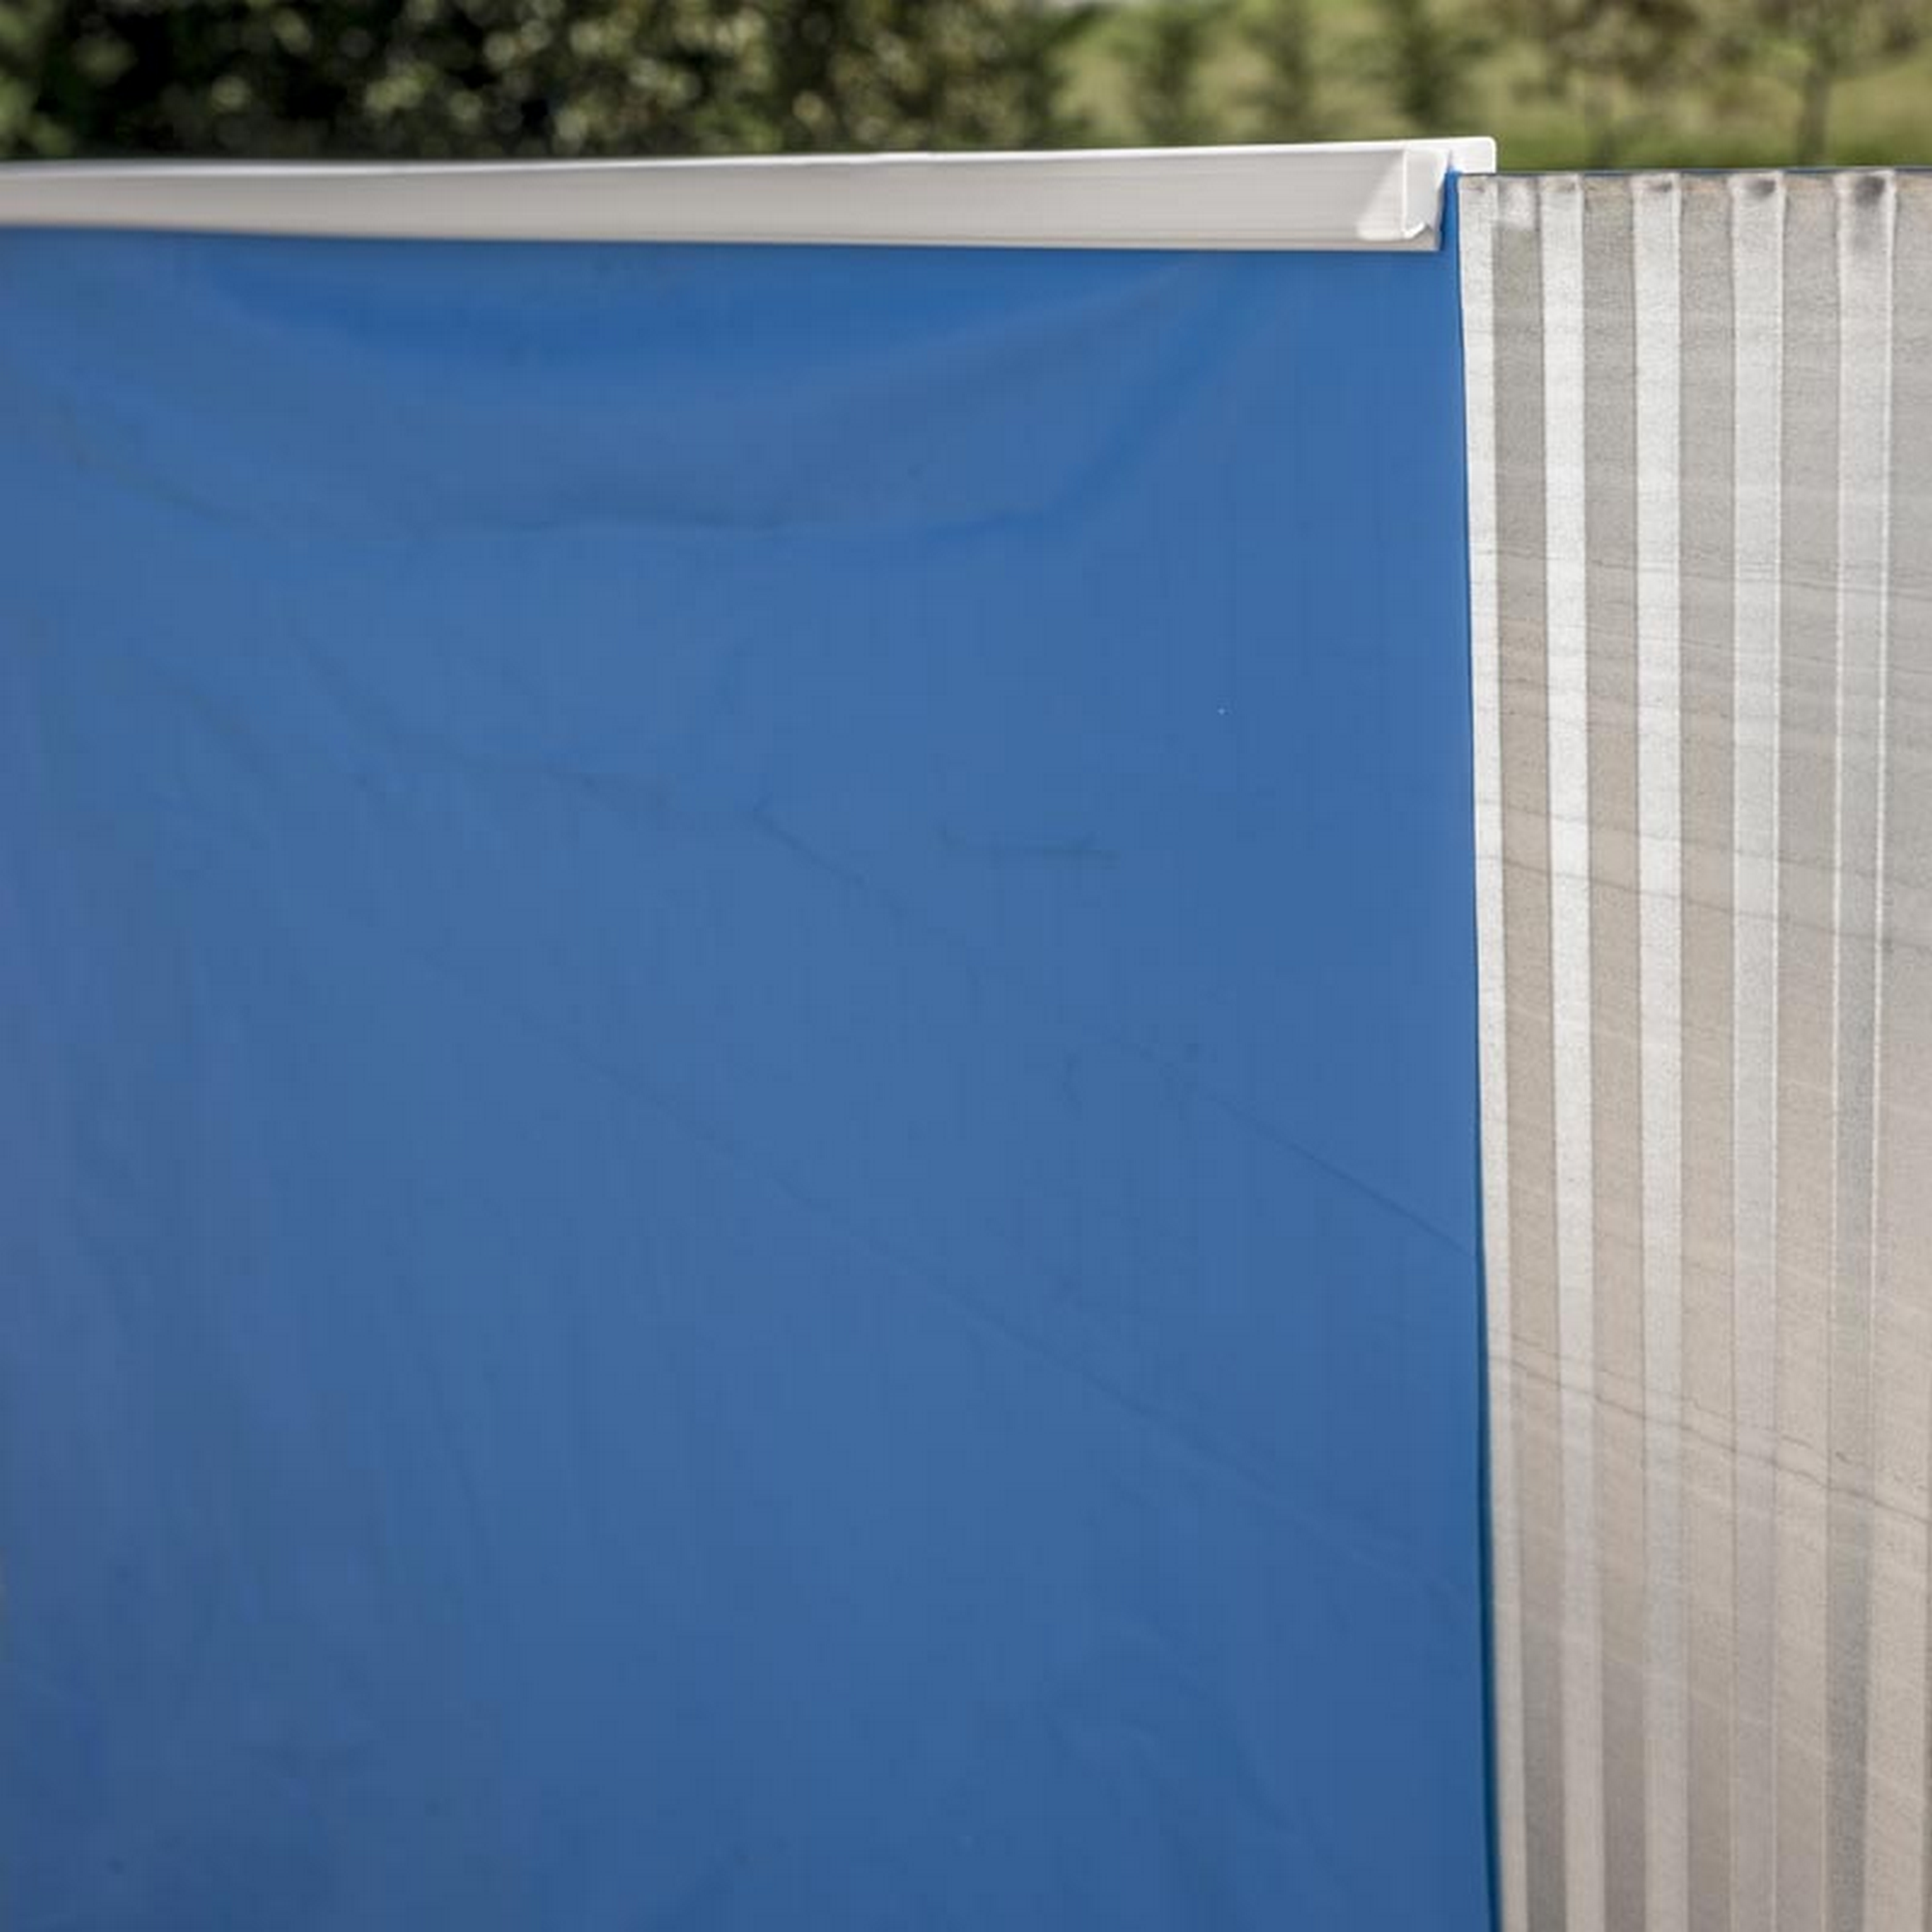 Einbaupool-Set 'Sumatra' blau/weiß rund Ø 420 x 150 cm + product picture